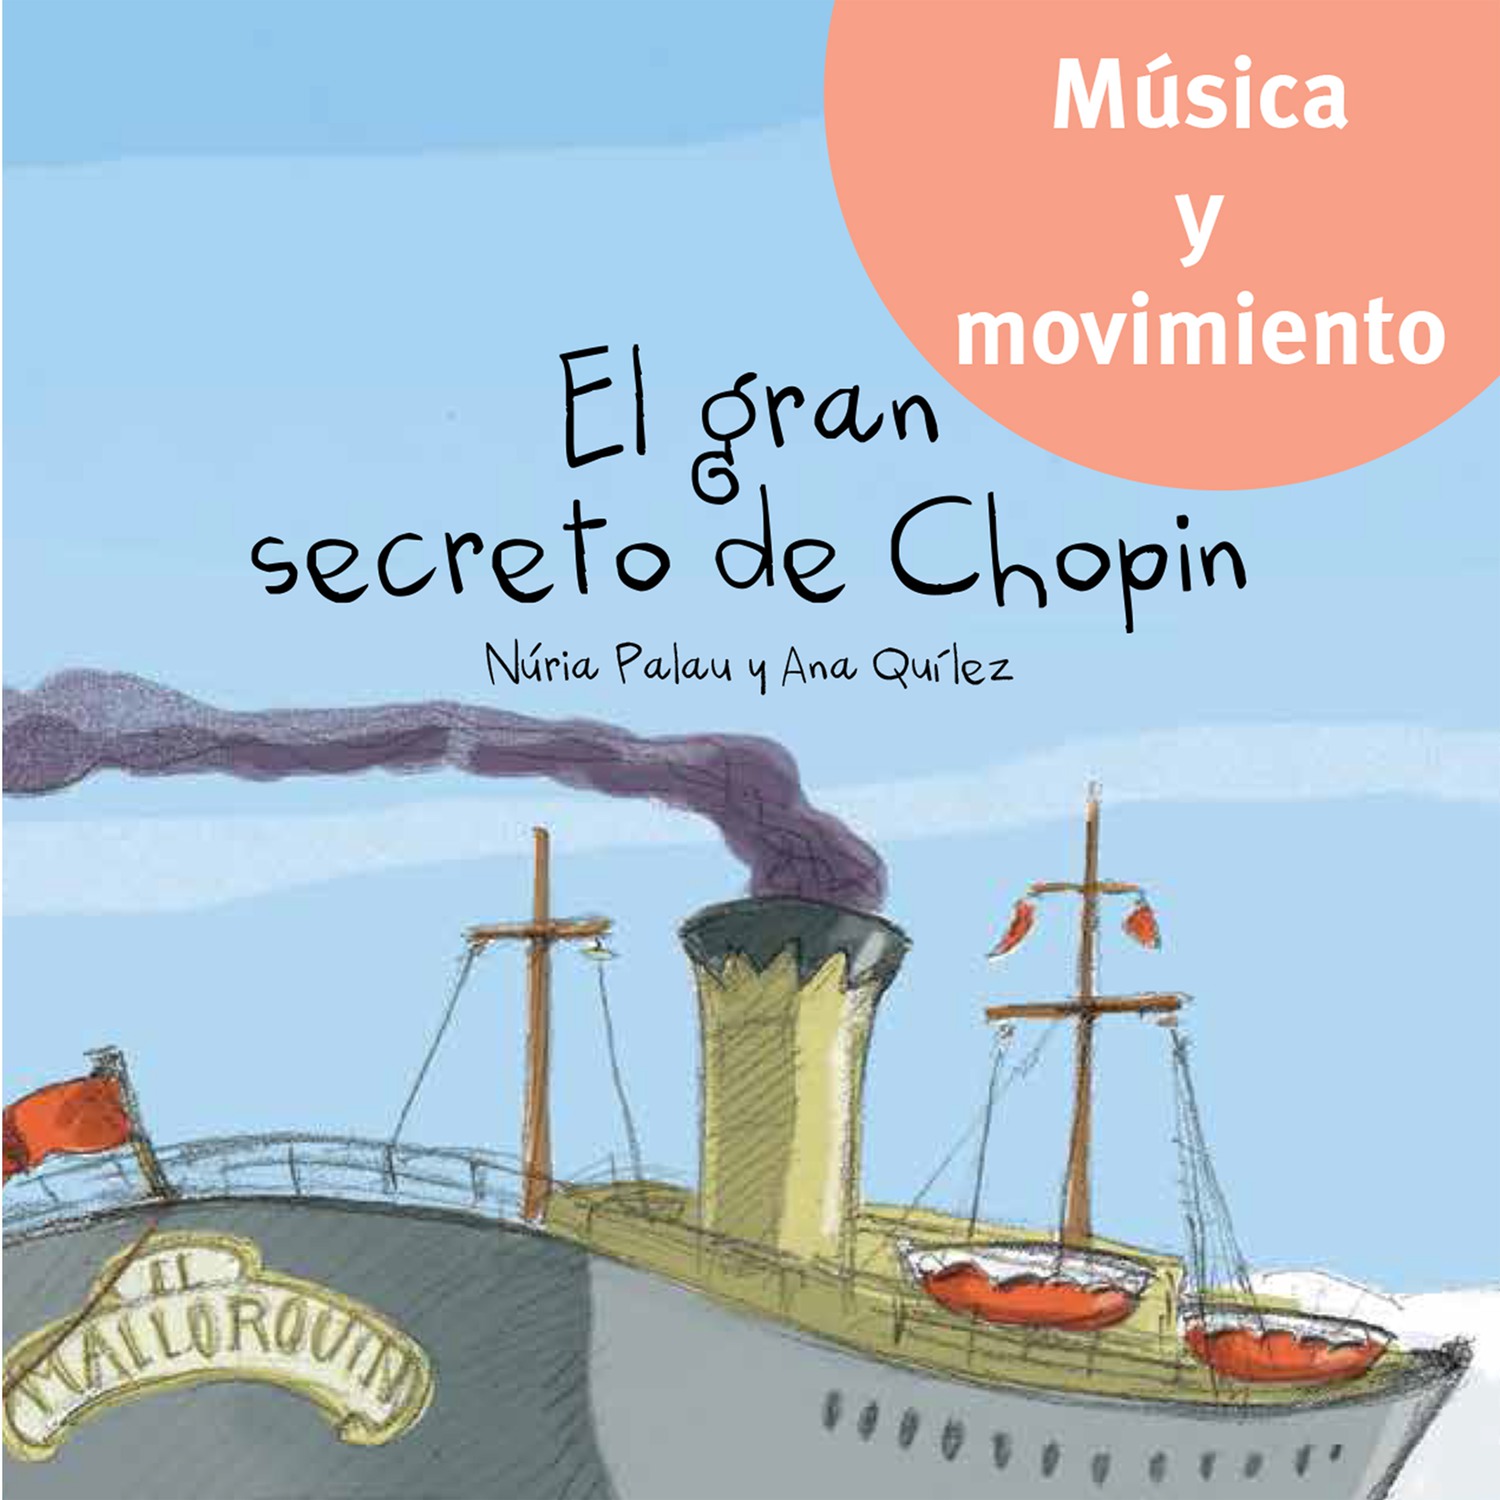 El gran secreto de Chopin